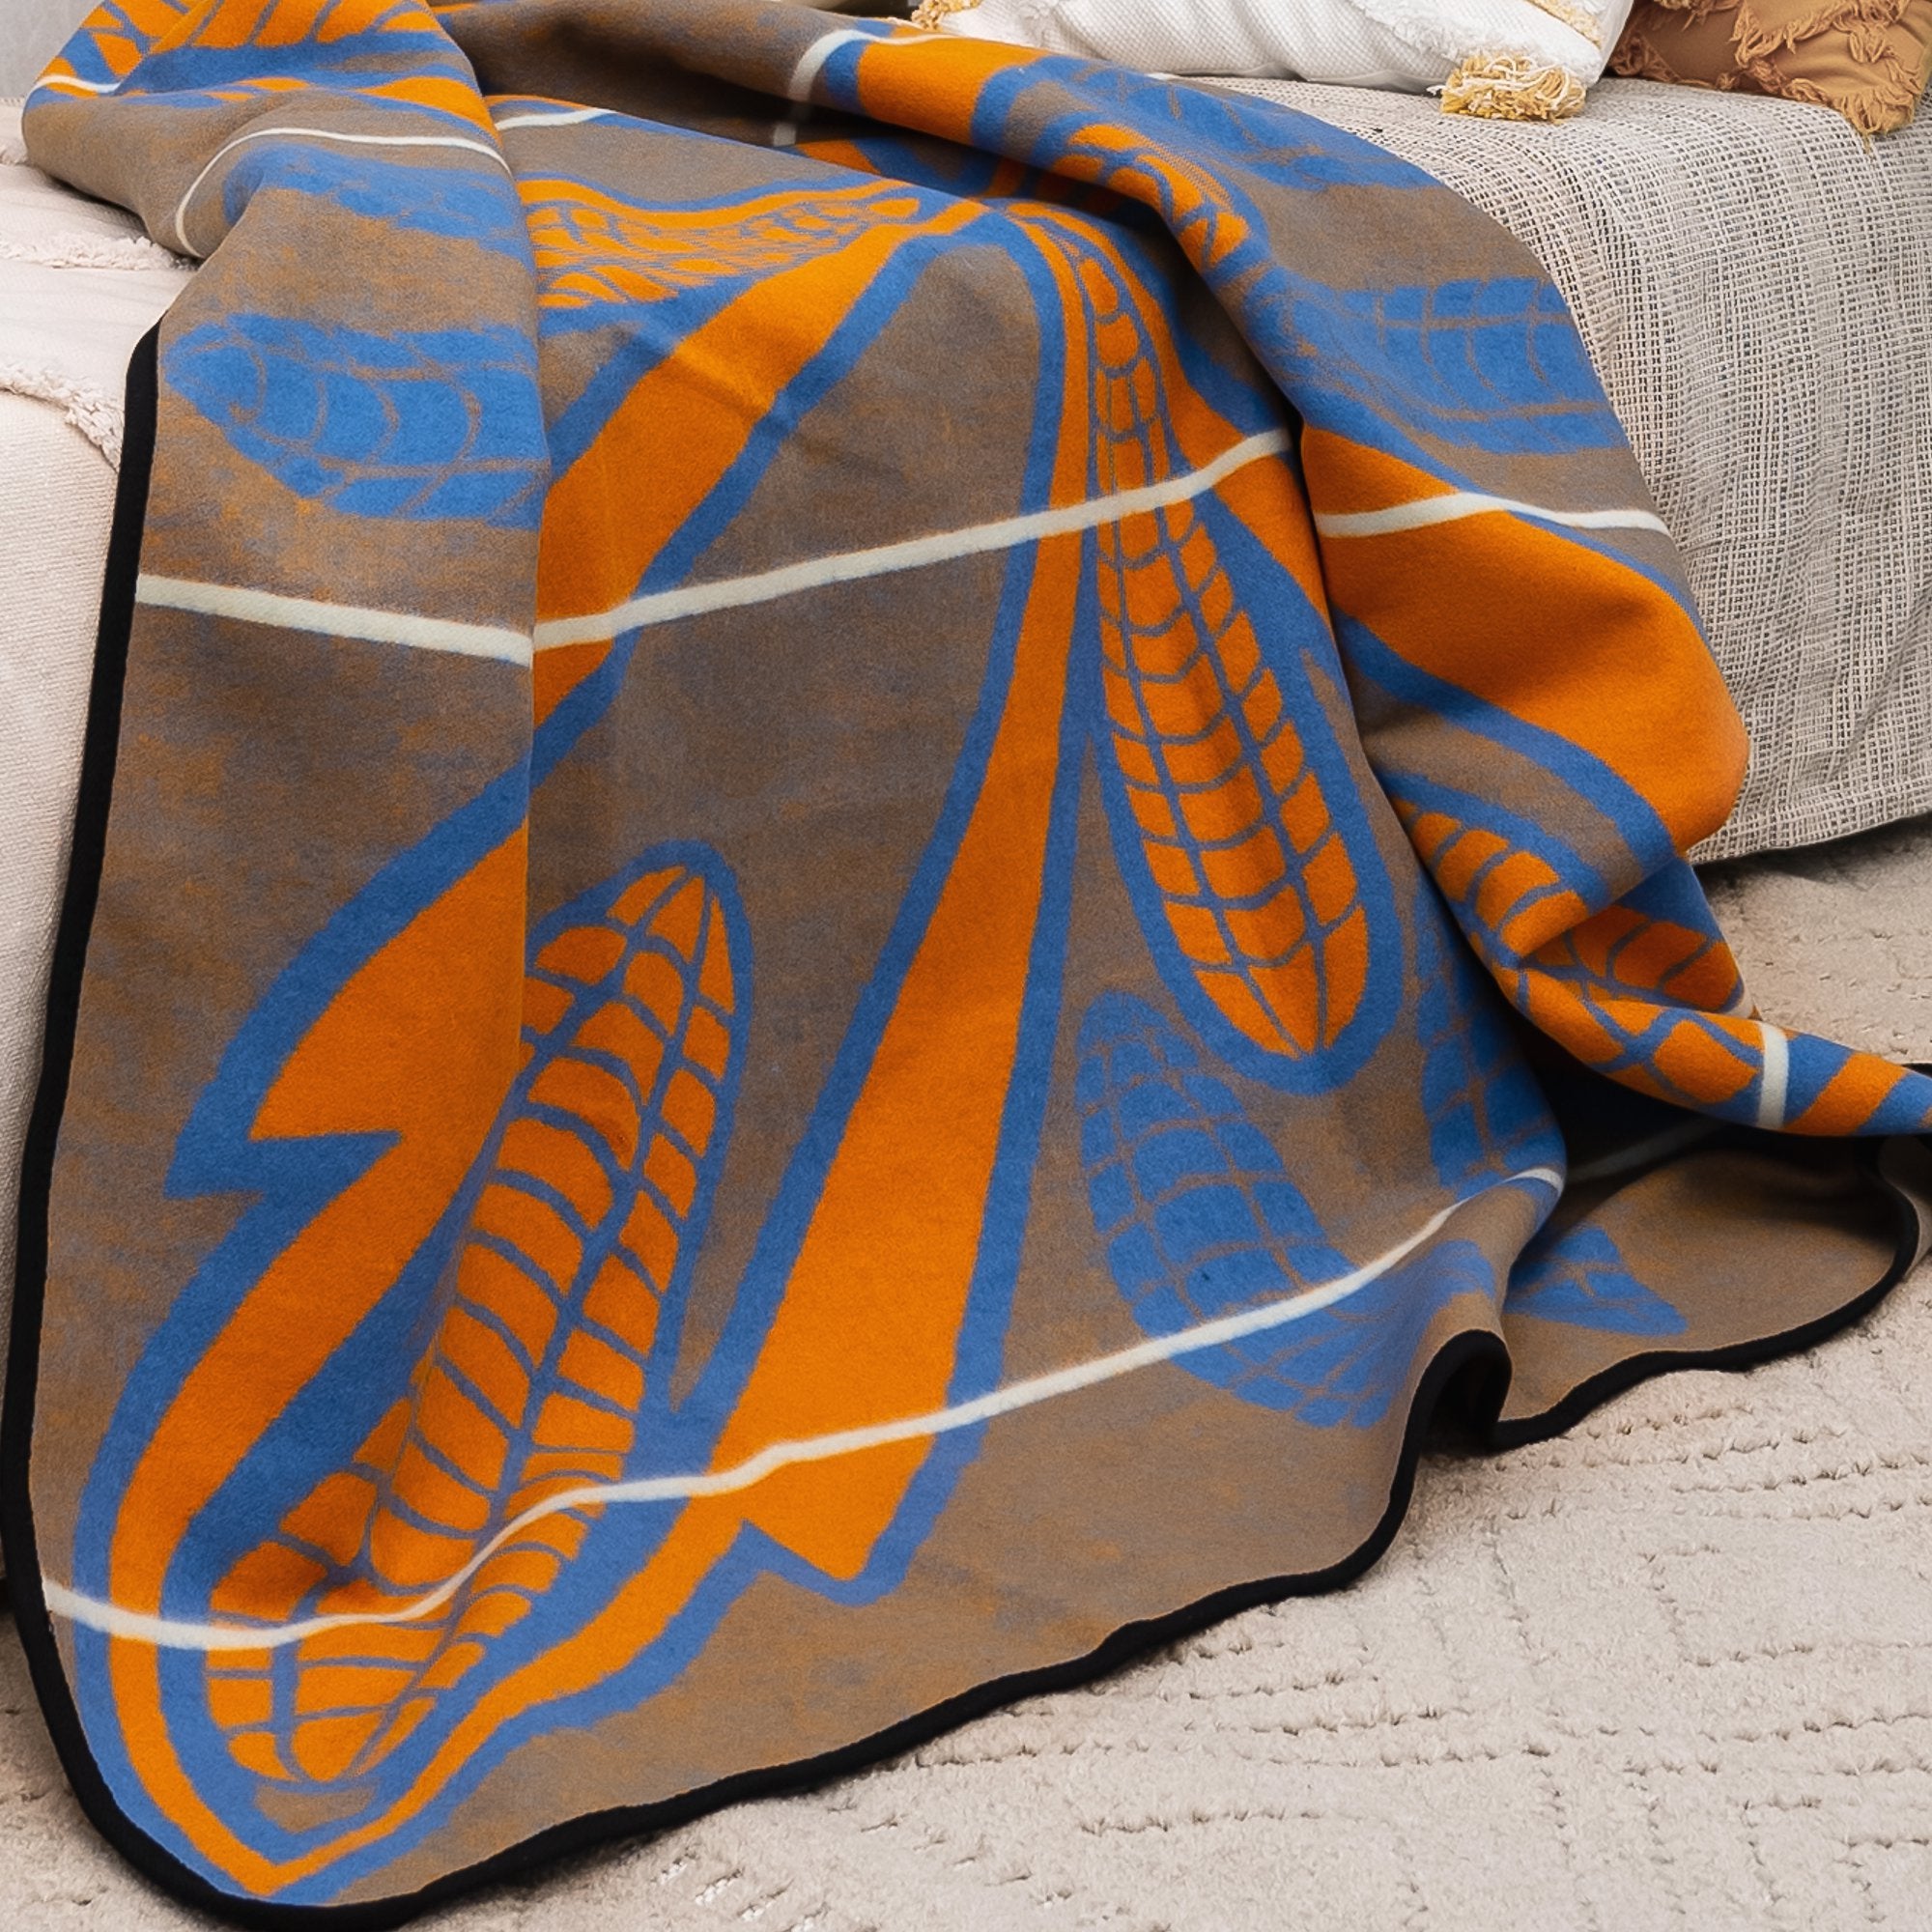 Wohndecke aus Merinowolle / Basotho-Decke – Duala – 165 x 155 cm